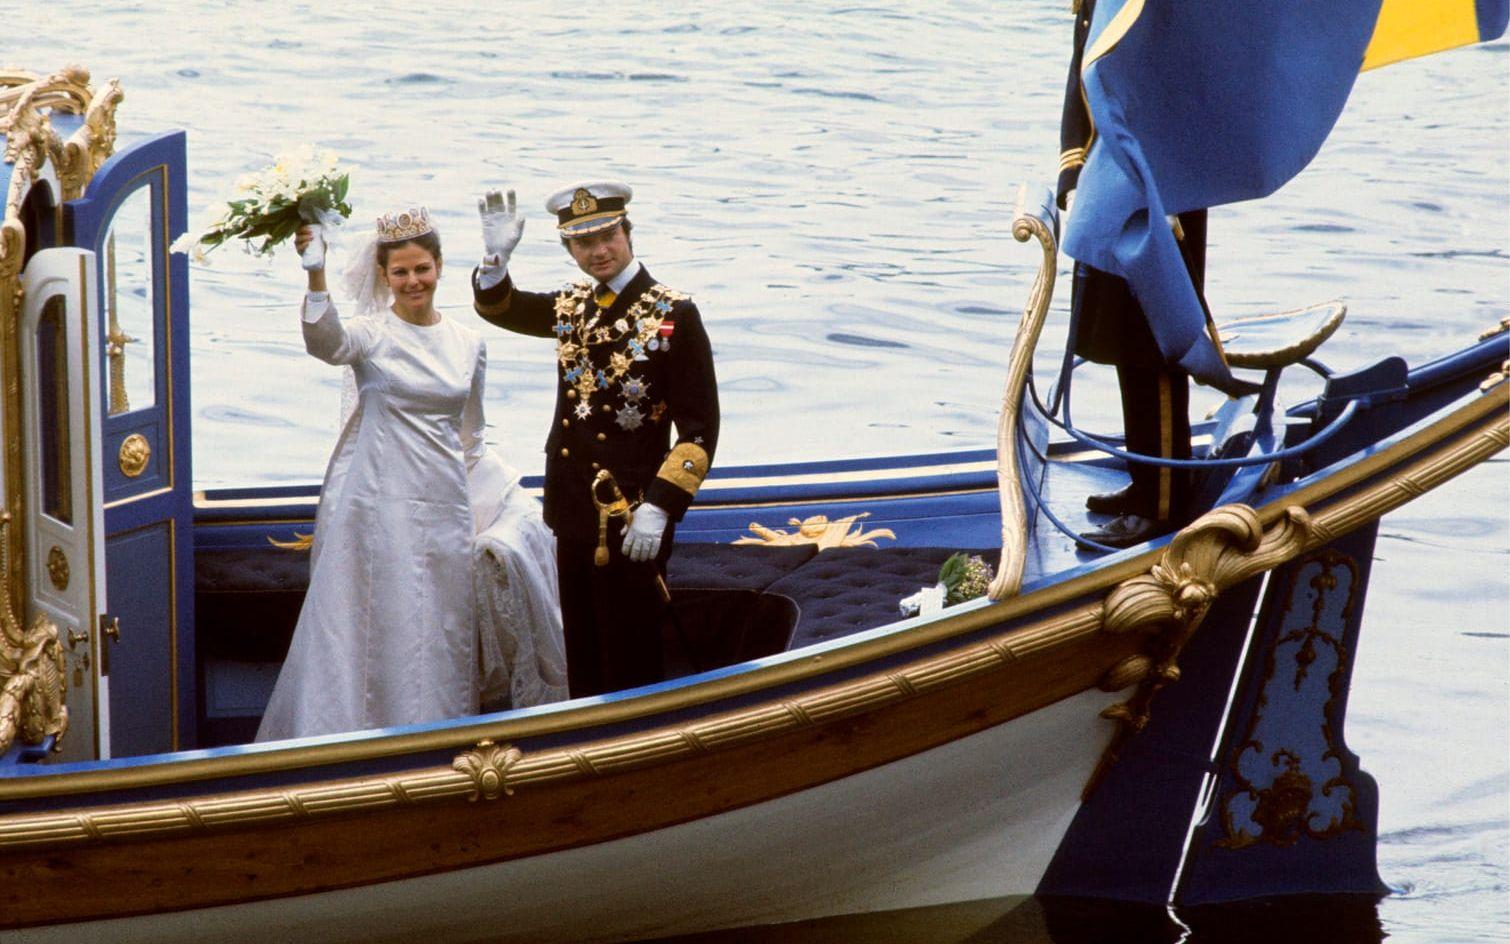 19 juni, 1976: Bröllopsparet på kungaslupen på väg mot slottskajen i Stockholm.